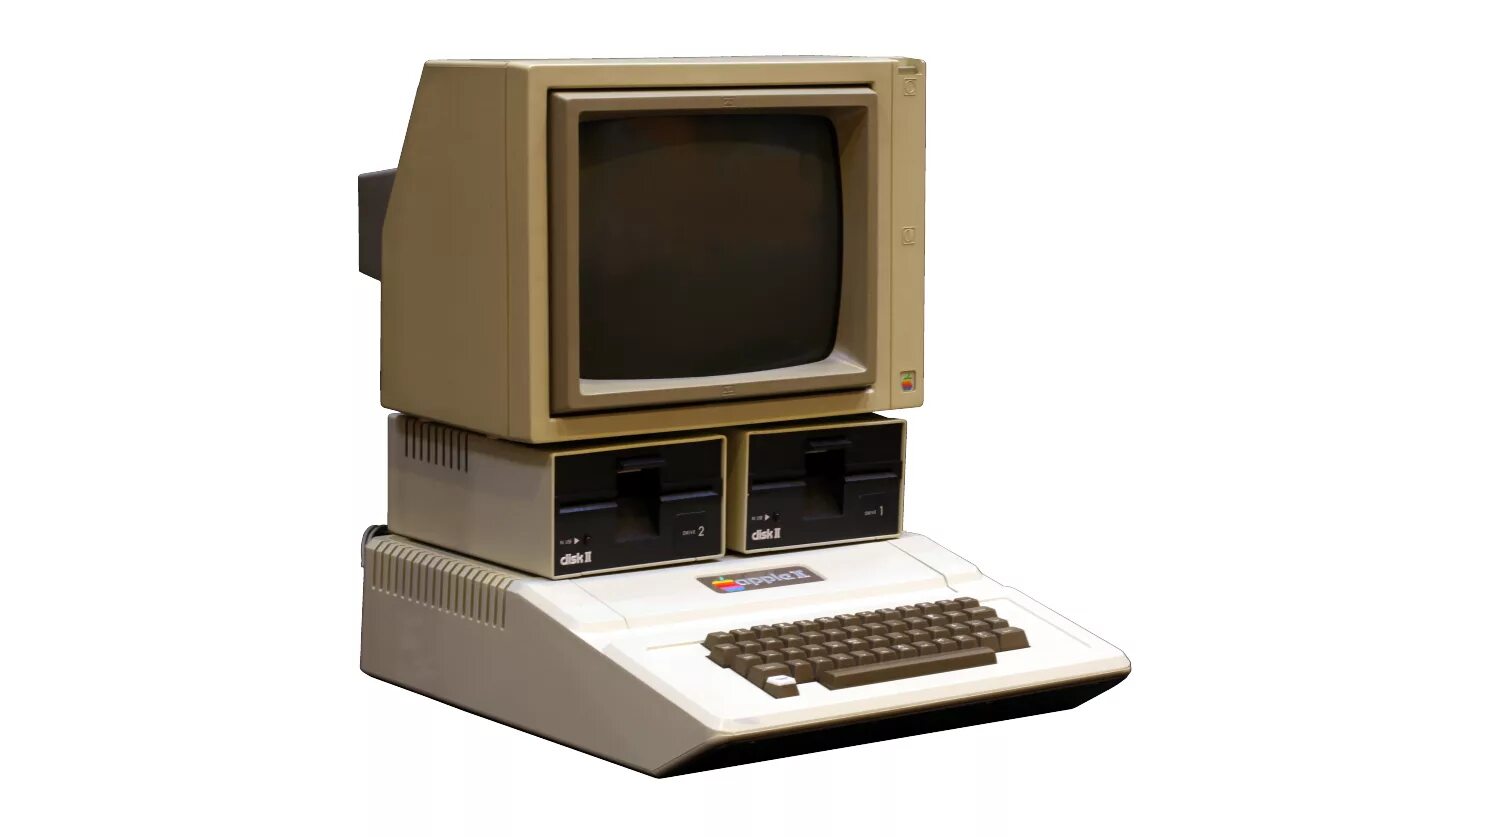 1 личный компьютер. Эппл 2. Четвертое поколение ЭВМ IBM PC. Четвертое поколение ЭВМ Apple 1. Эппл 2 компьютер.